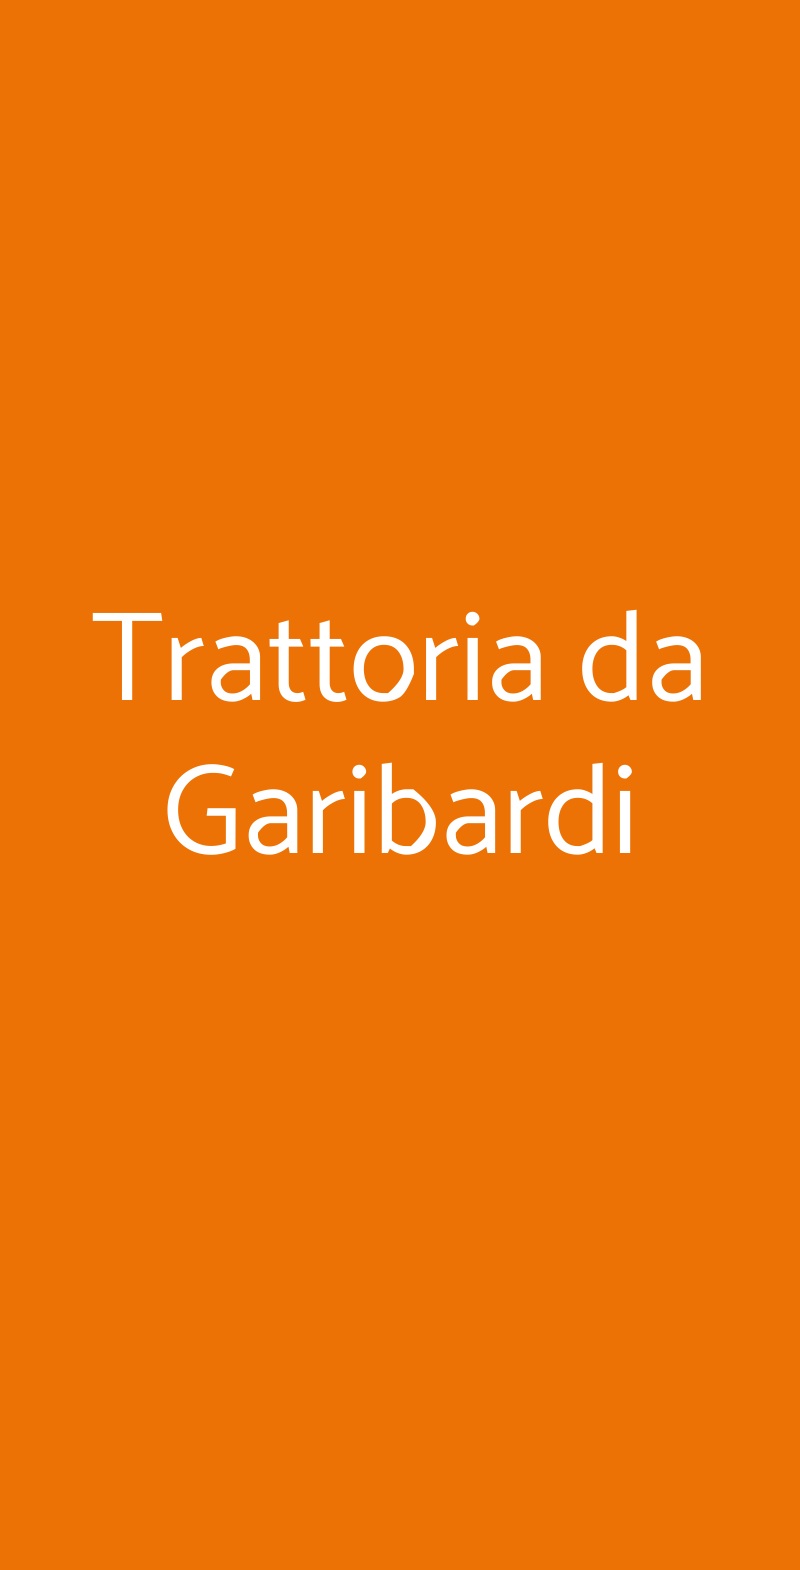 Trattoria da Garibardi Firenze menù 1 pagina